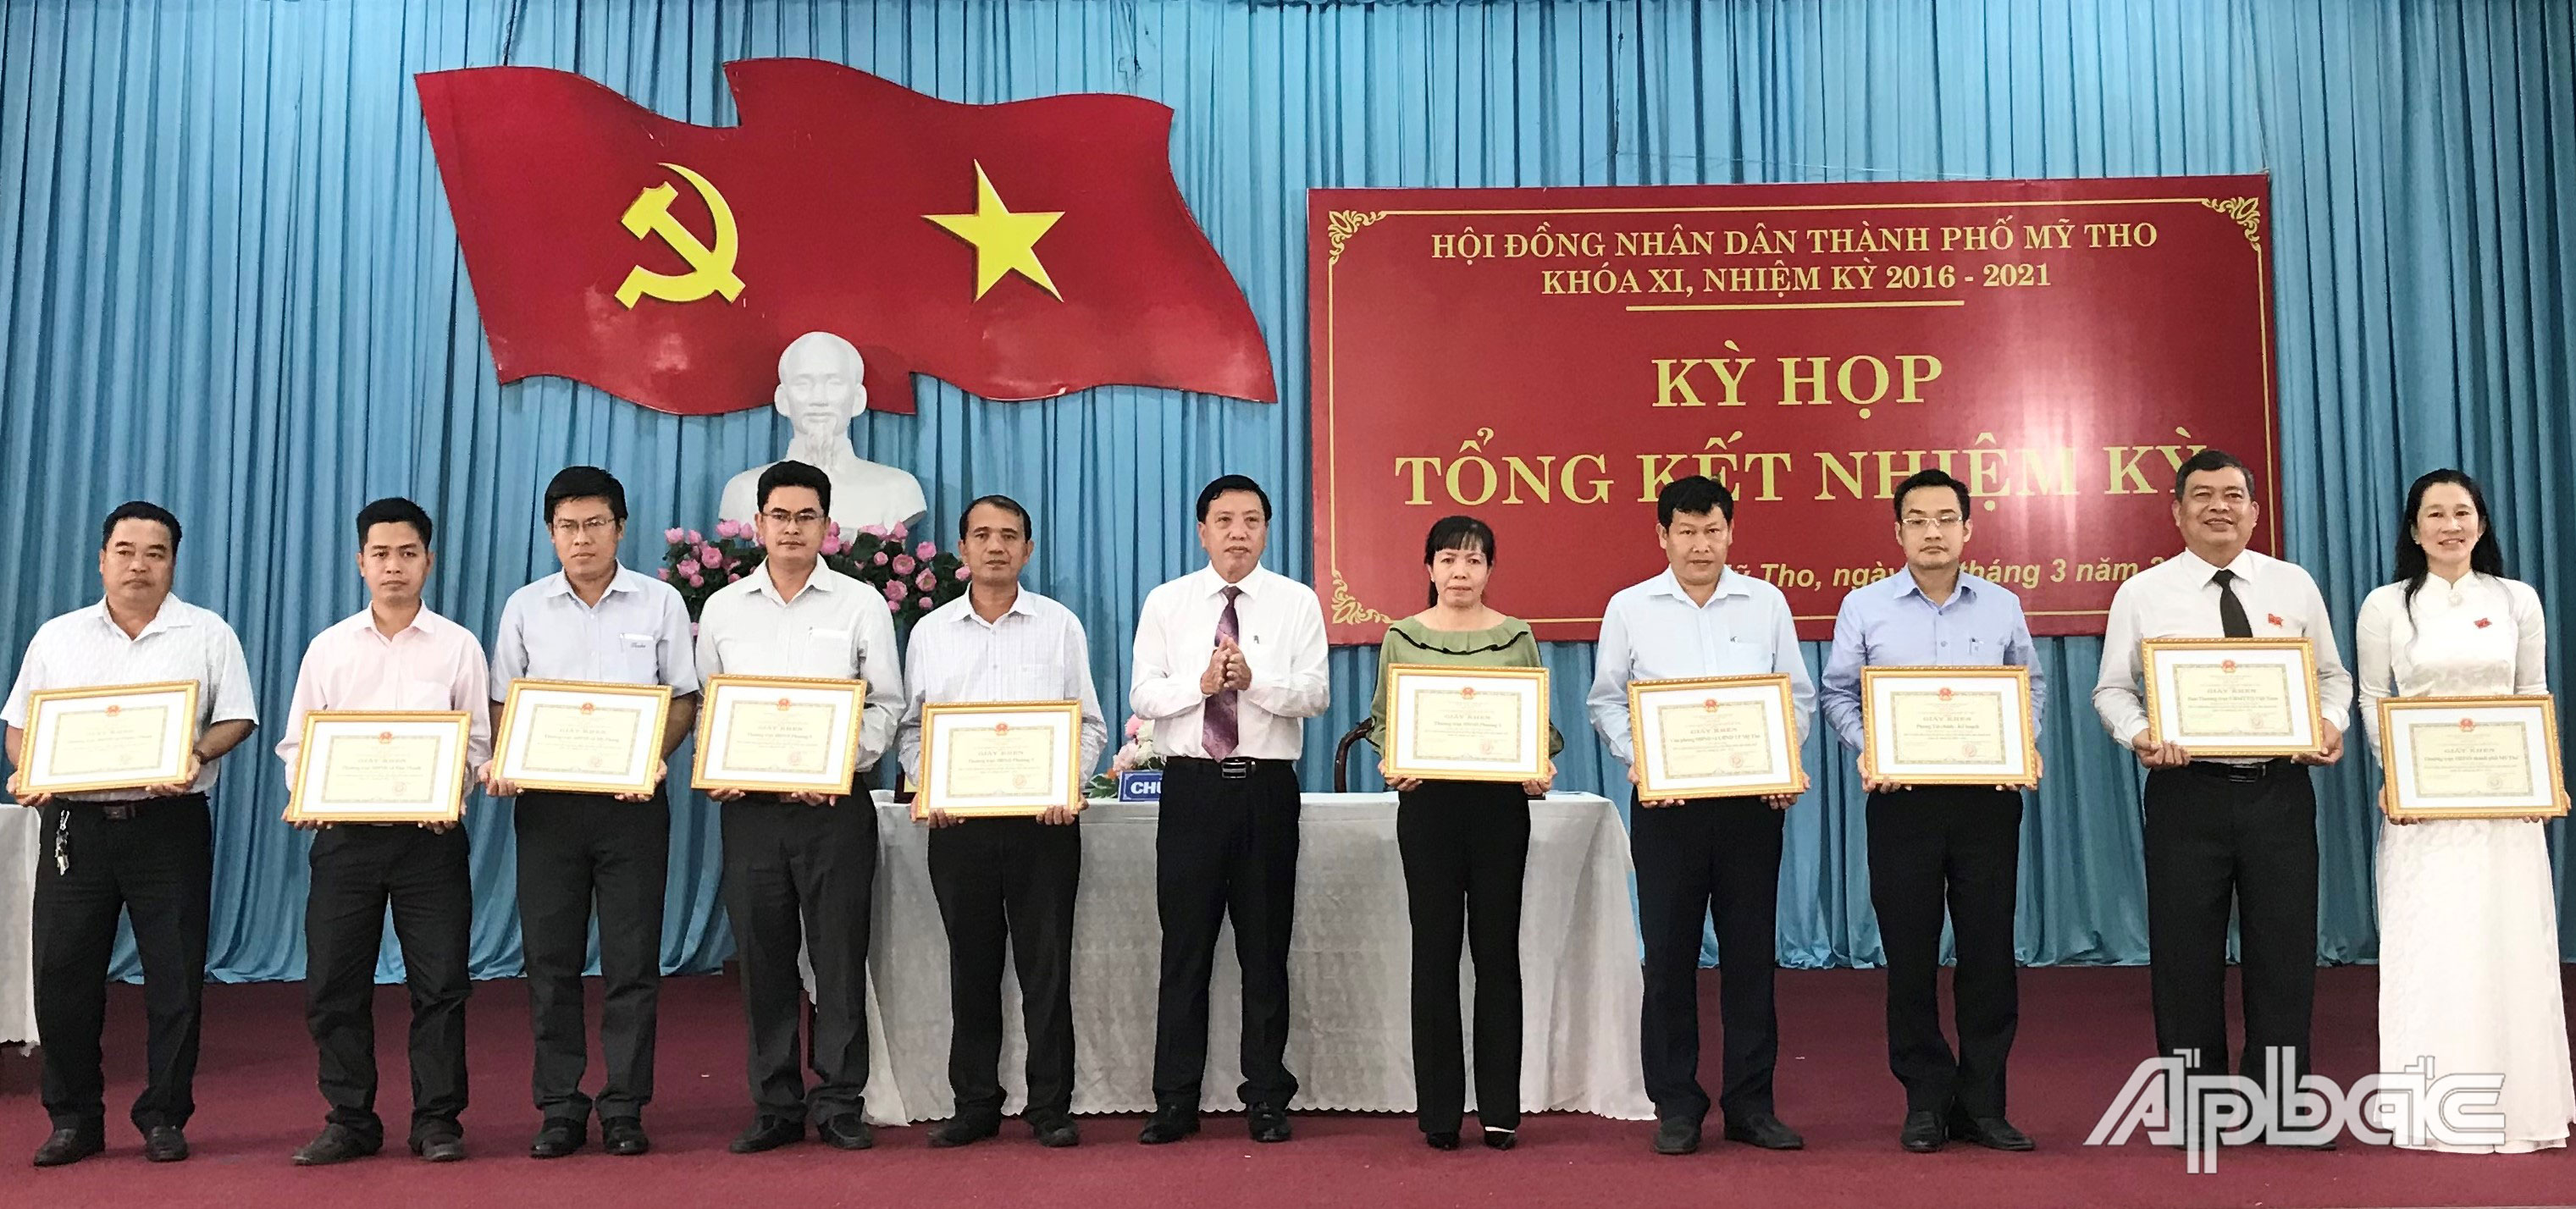 Chủ tịch UBND TP. Mỹ Tho Nguyễn Thành Công tặng Giấy khen cho các tập thể có nhiều đóng góp trong hoạt động HĐND thành phố khóa XI, nhiệm kỳ 2016 - 2021.